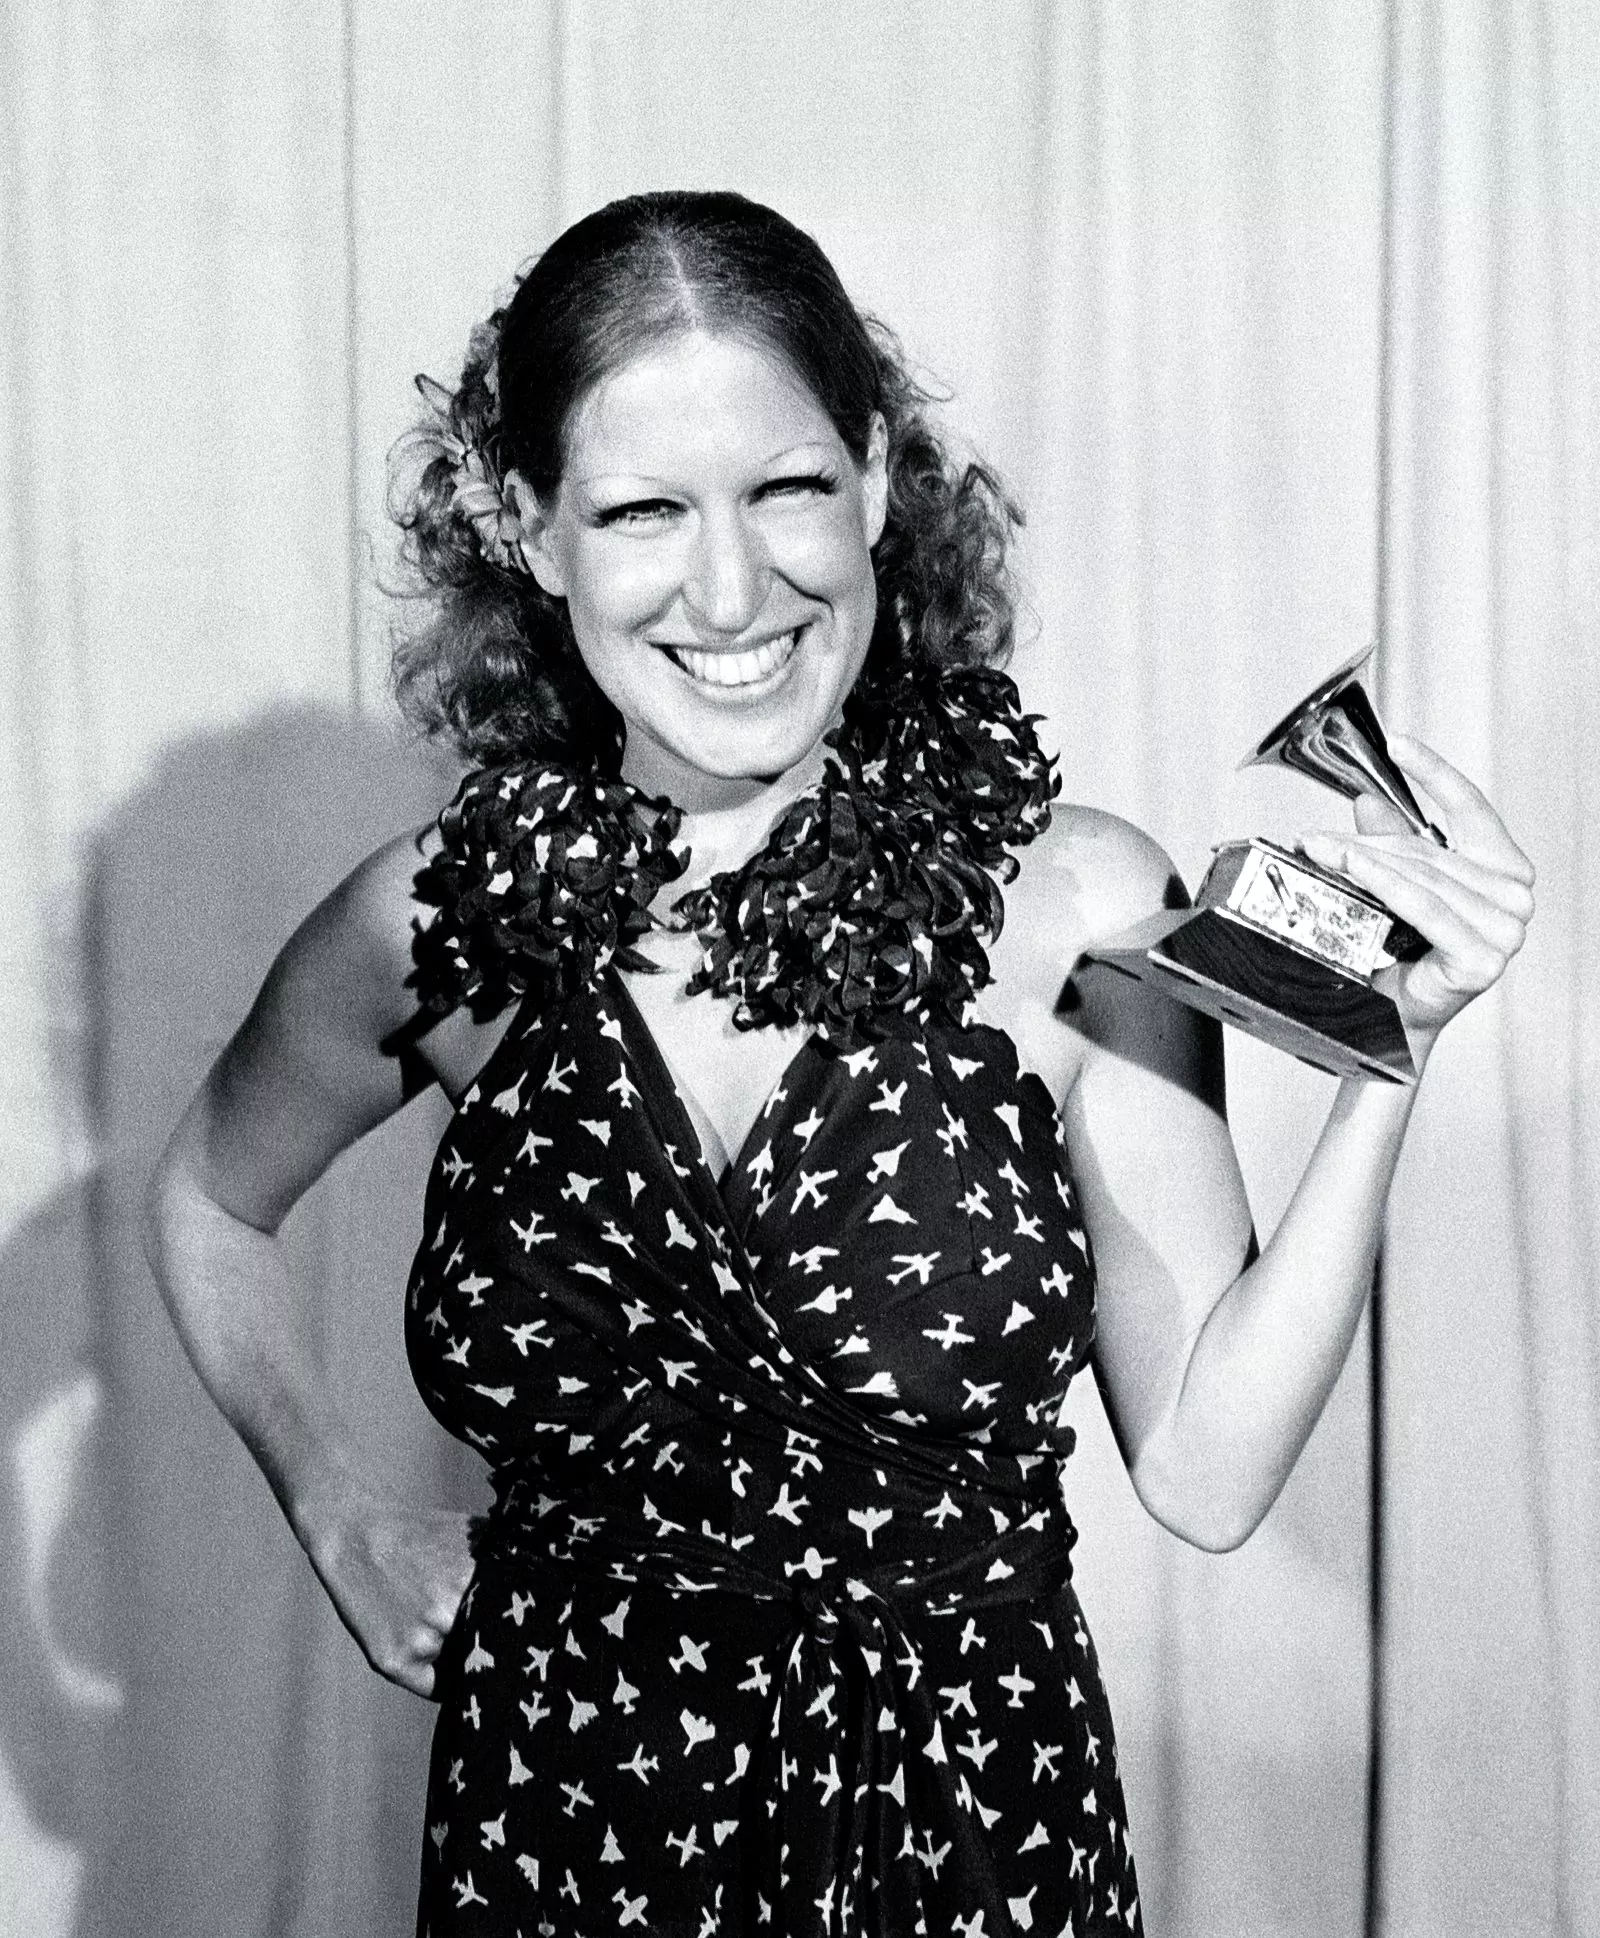 Bette Midler - Grammy winner, March 2, 1974